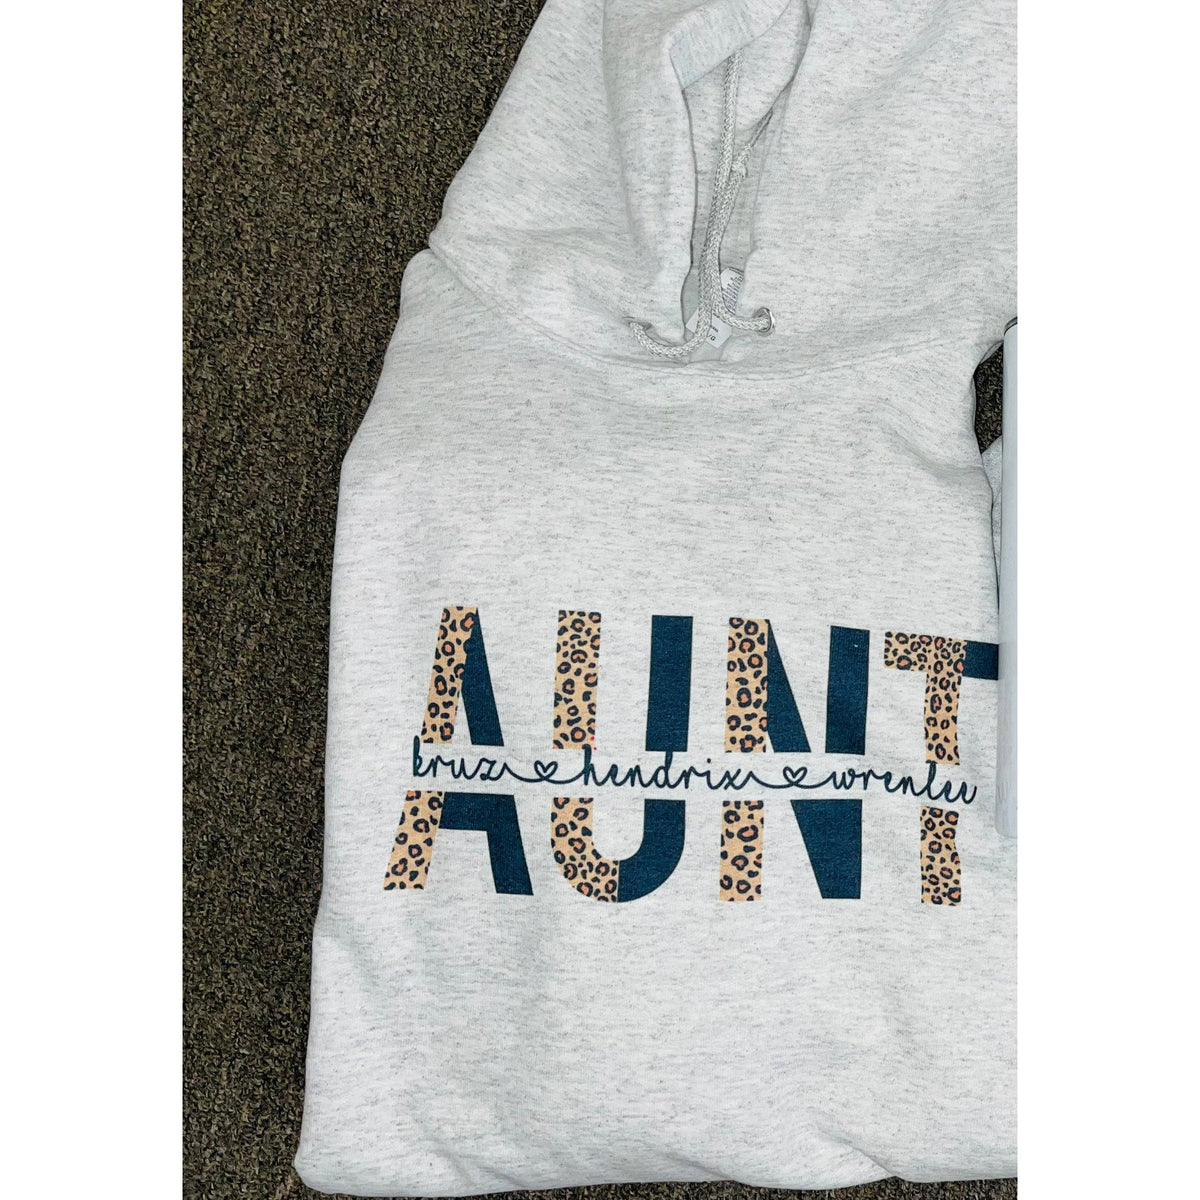 Aunt Black and Leopard Custom Sweatshirt, Hoodie or Tee